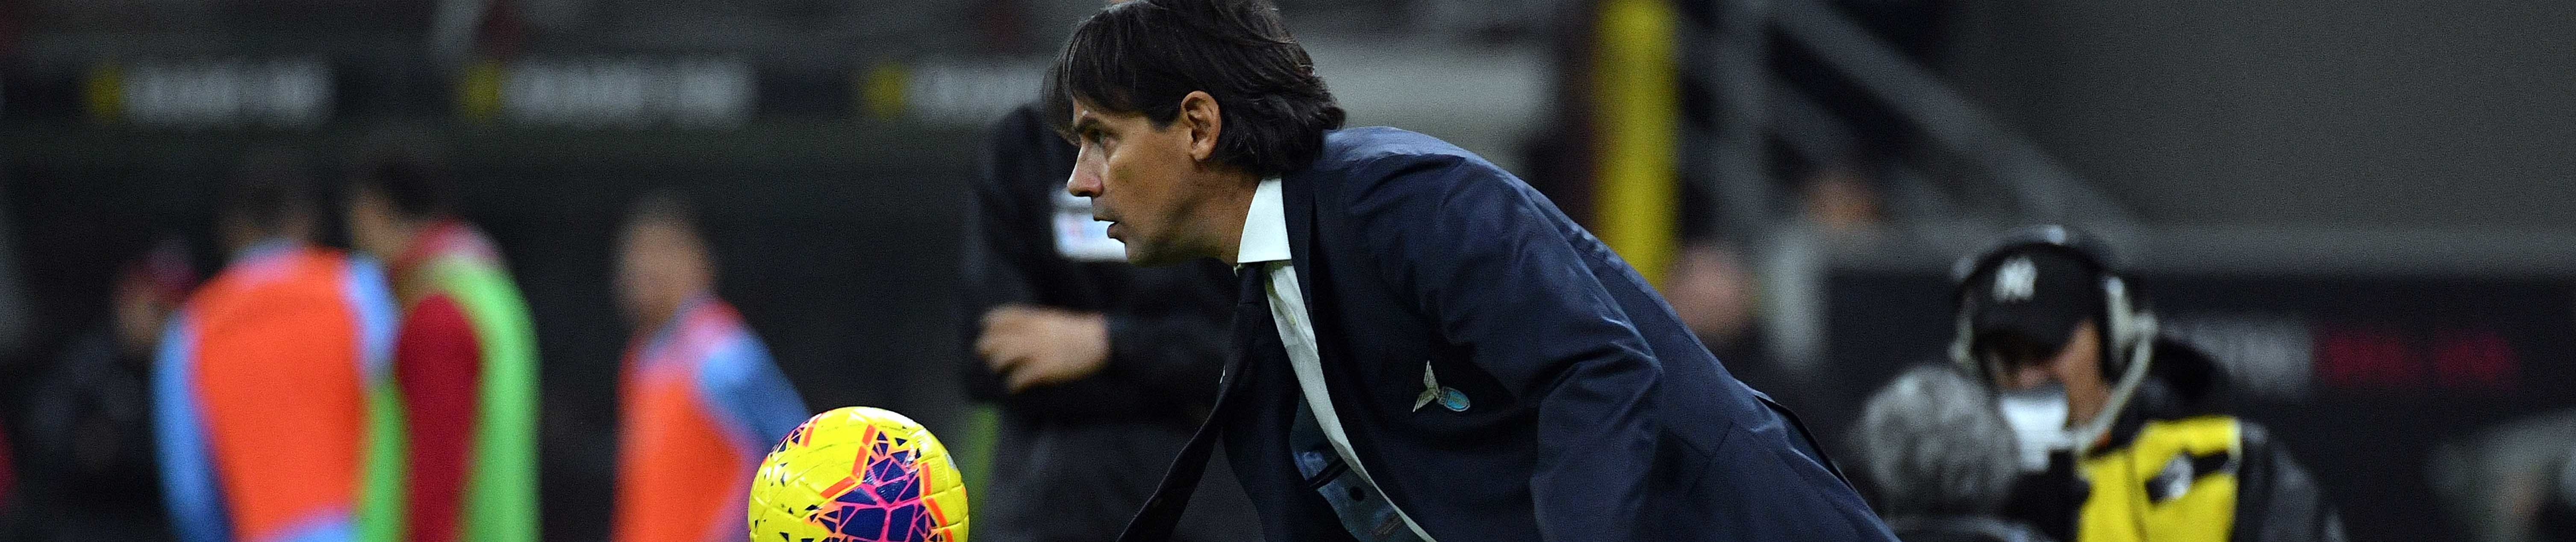 Lazio-Celtic: Inzaghi deve vincere per riportare il destino nelle mani della Lazio